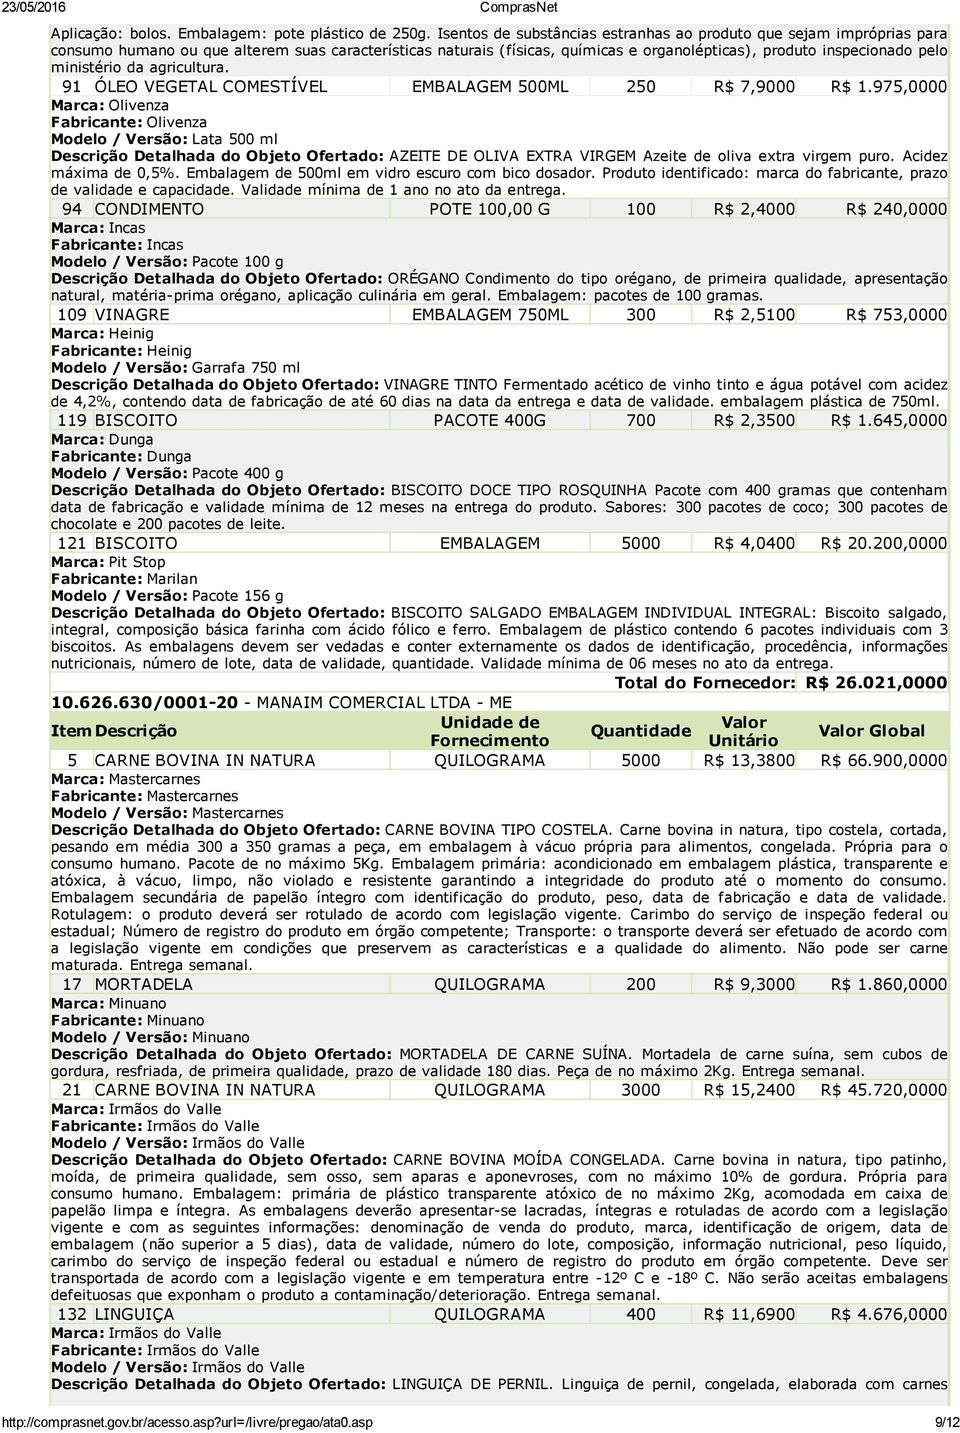 ministério da agricultura. 91 ÓLEO VEGETAL COMESTÍVEL EMBALAGEM 500ML 250 R$ 7,9000 R$ 1.